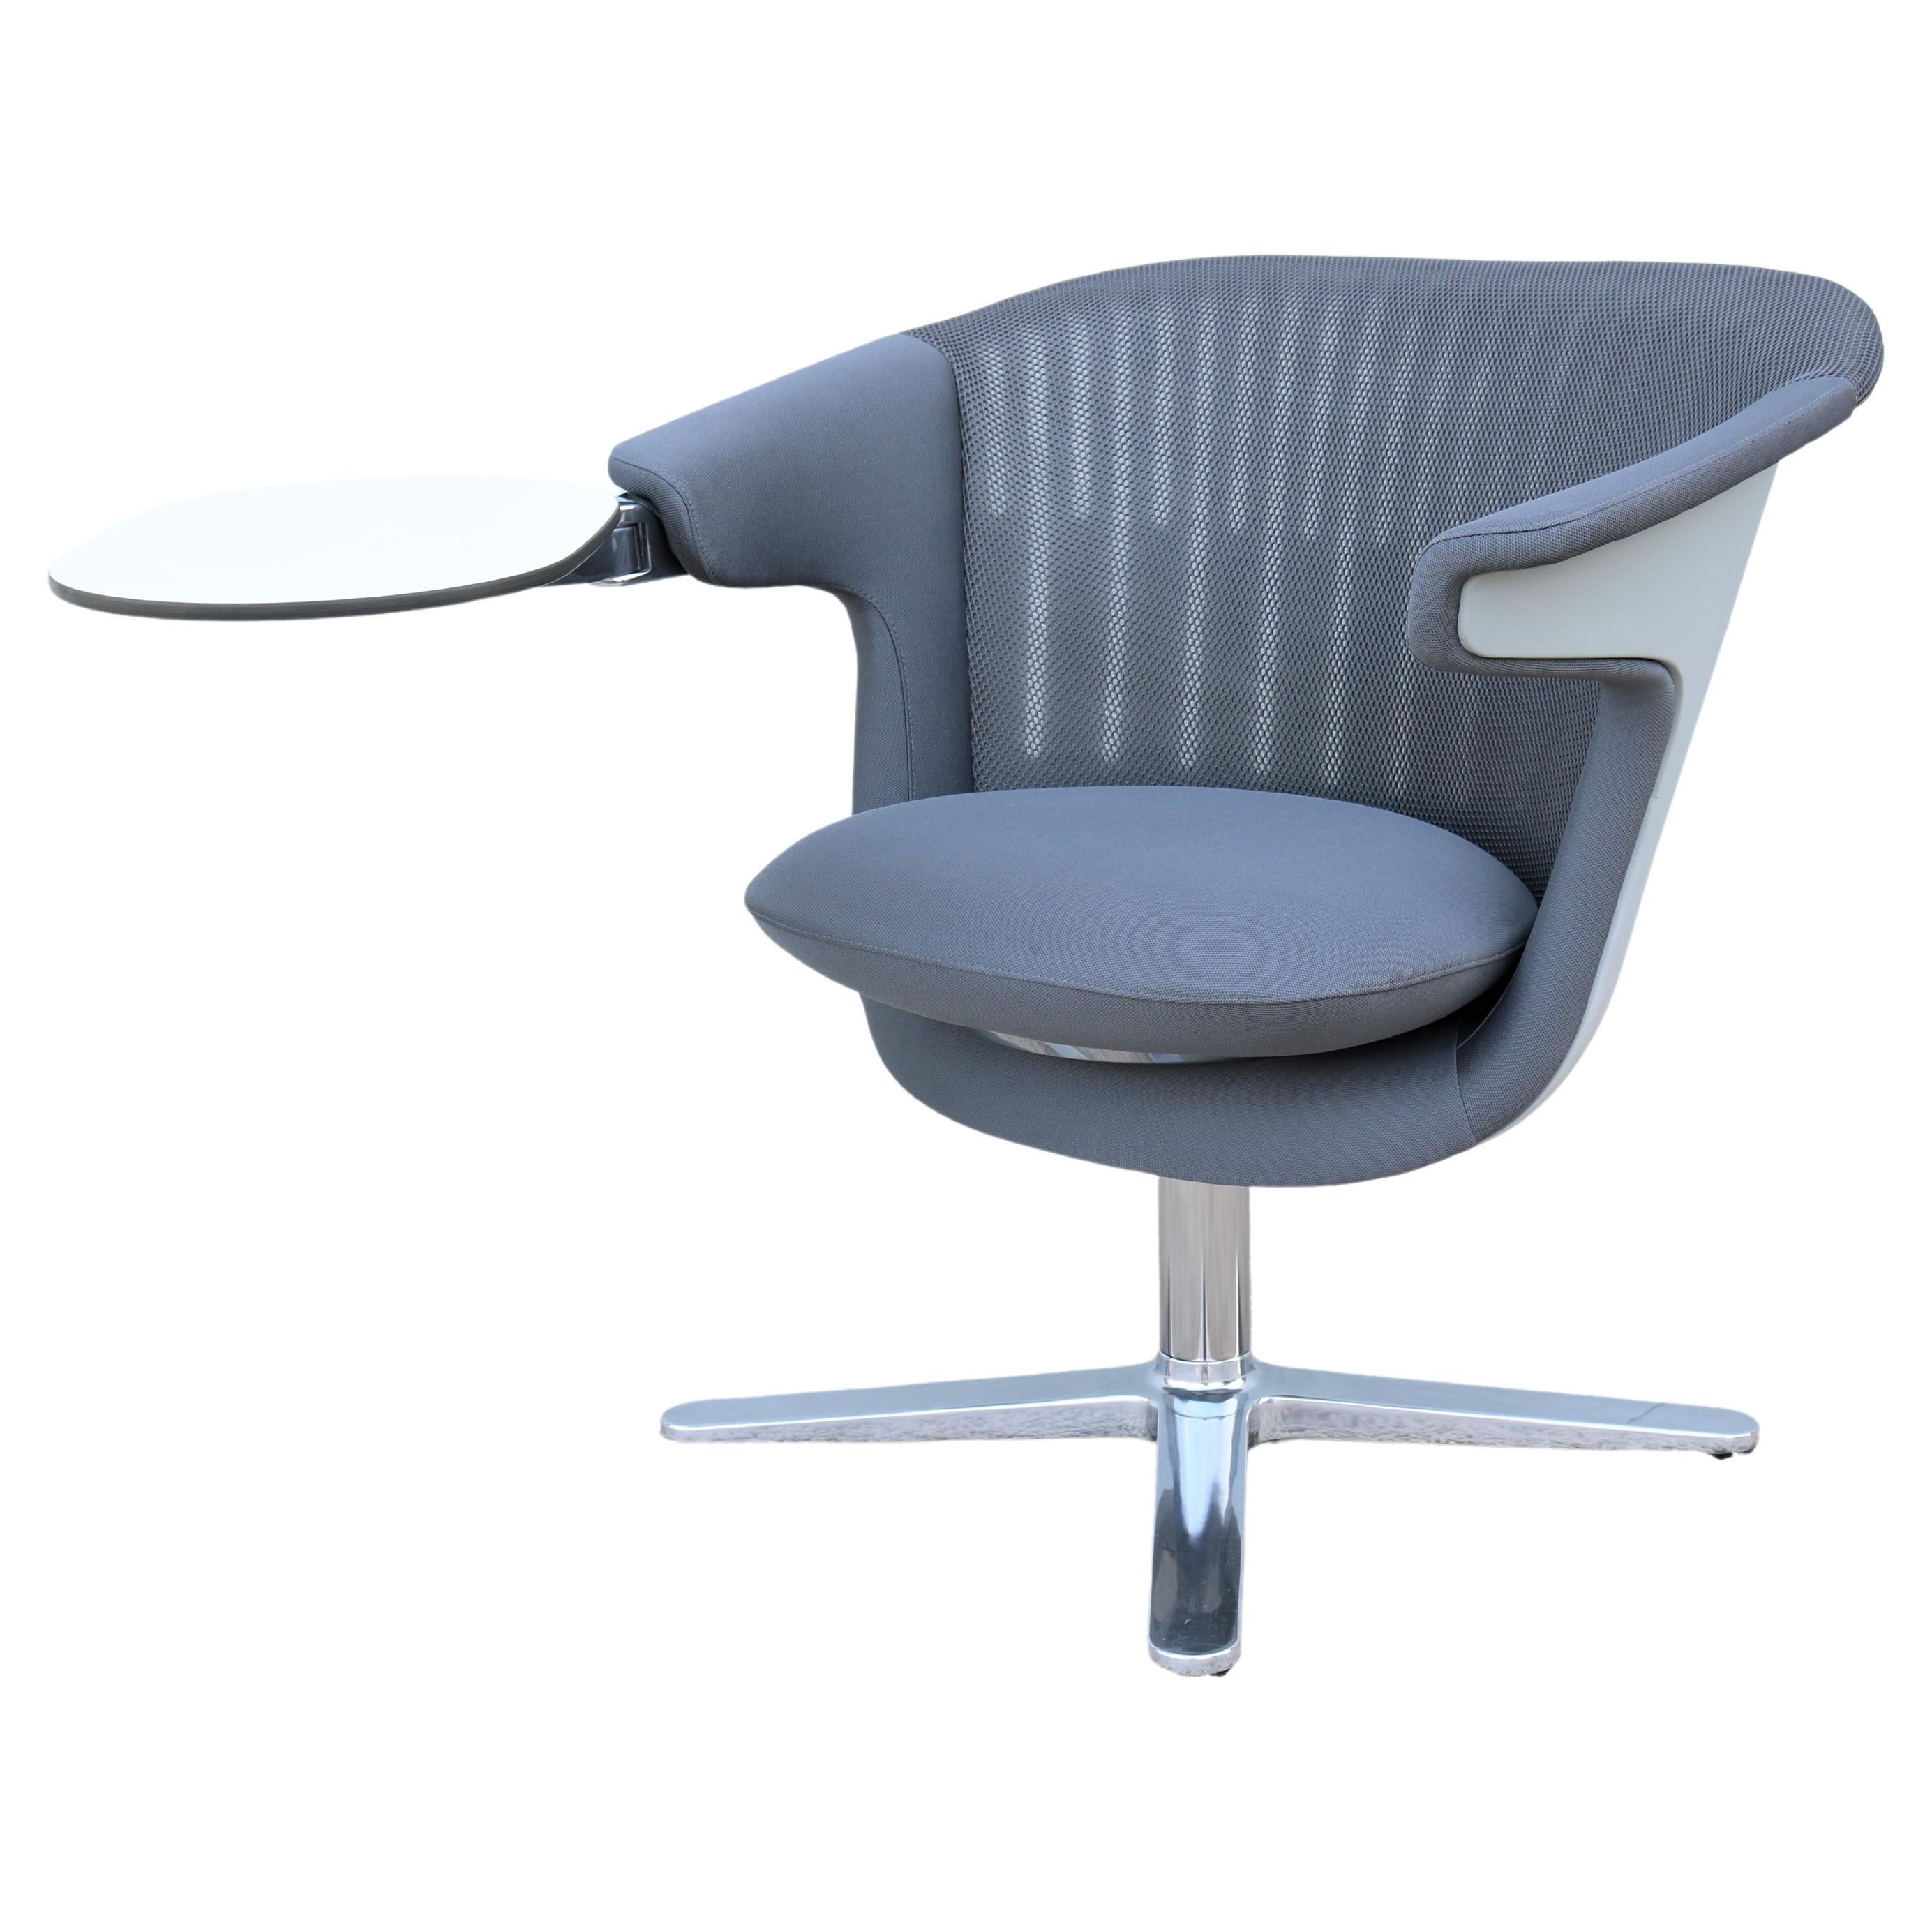 Chaise longue ergonomique pivotante double en graphite Steelcase i2i Collaborative de style moderne